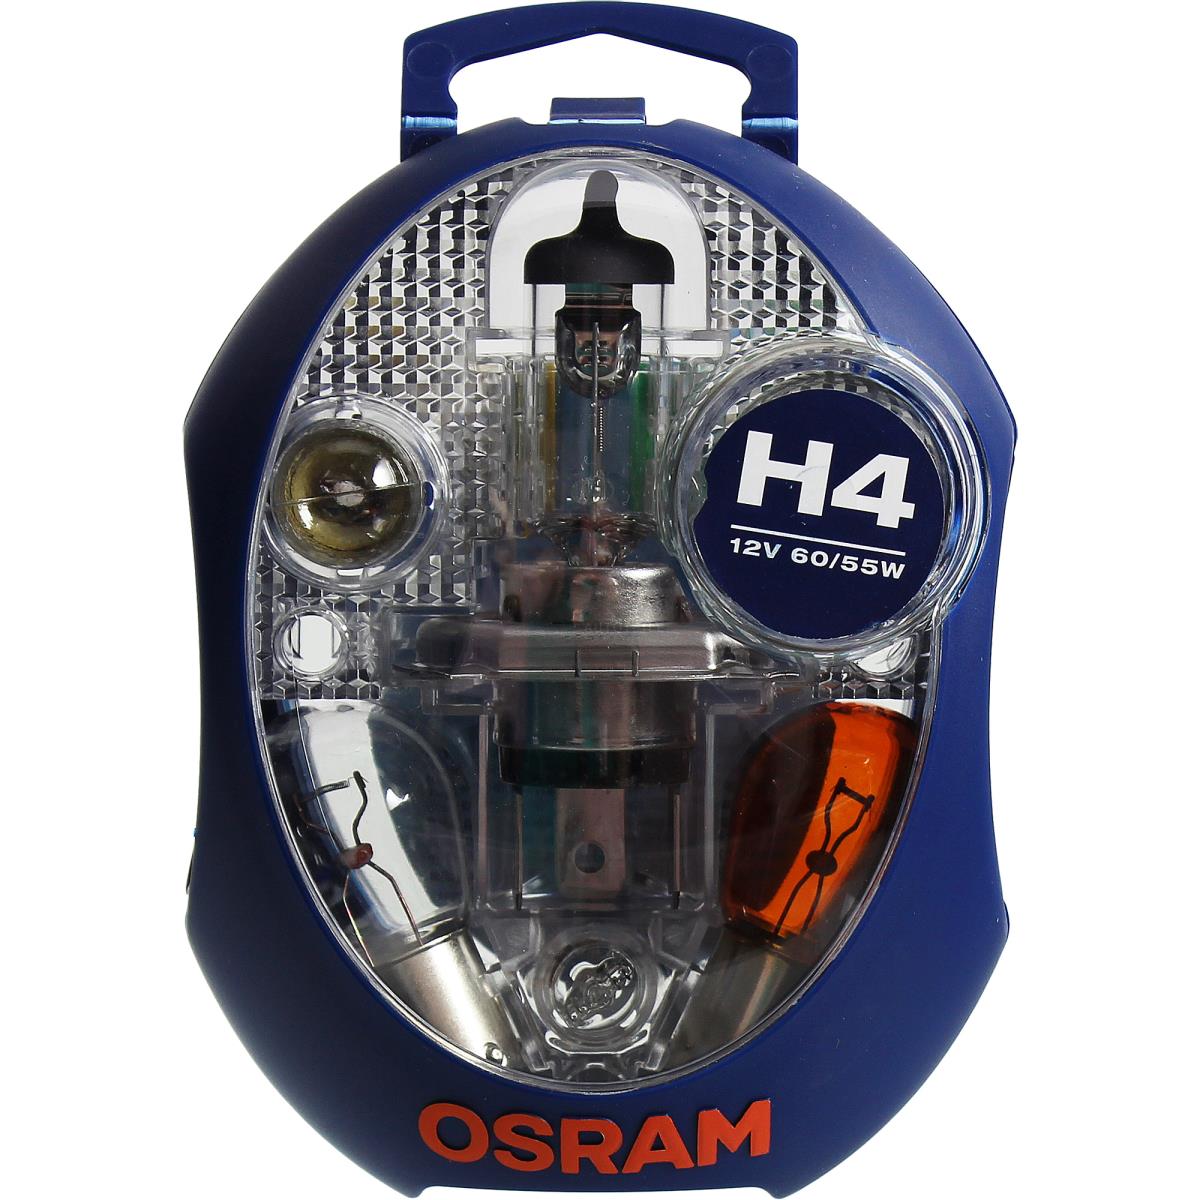 12V 60/55W Ersatzlampen-Box OSRAM H4+P21W+PY21W+P21/5W+R5W+W5W